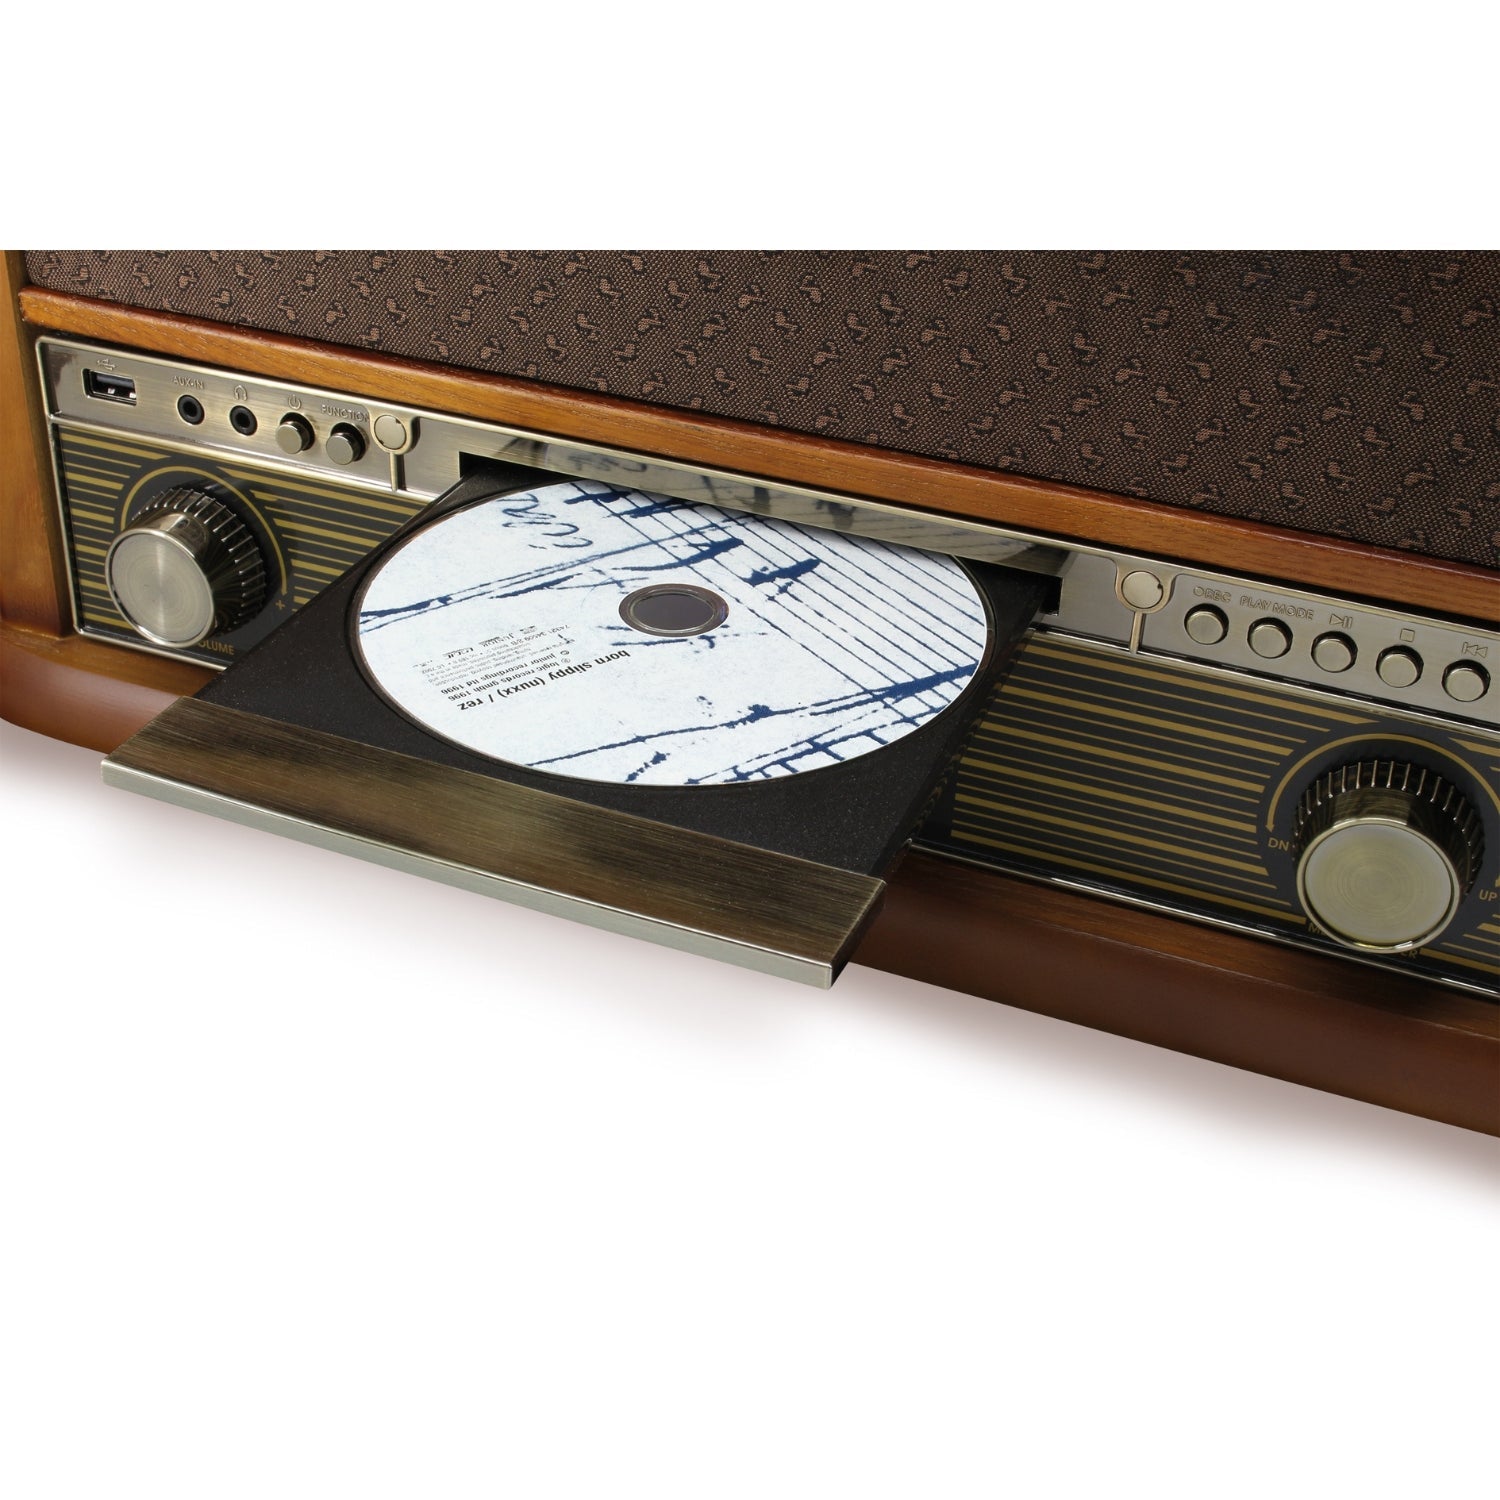 Soundmaster NR546BR set avec socle SF510 nostalgie stéréo DAB+/FM tourne-disque radio numérique avec système de micro magnétique Audio Technica CD/MP3 cassette USB encodage Bluetooth